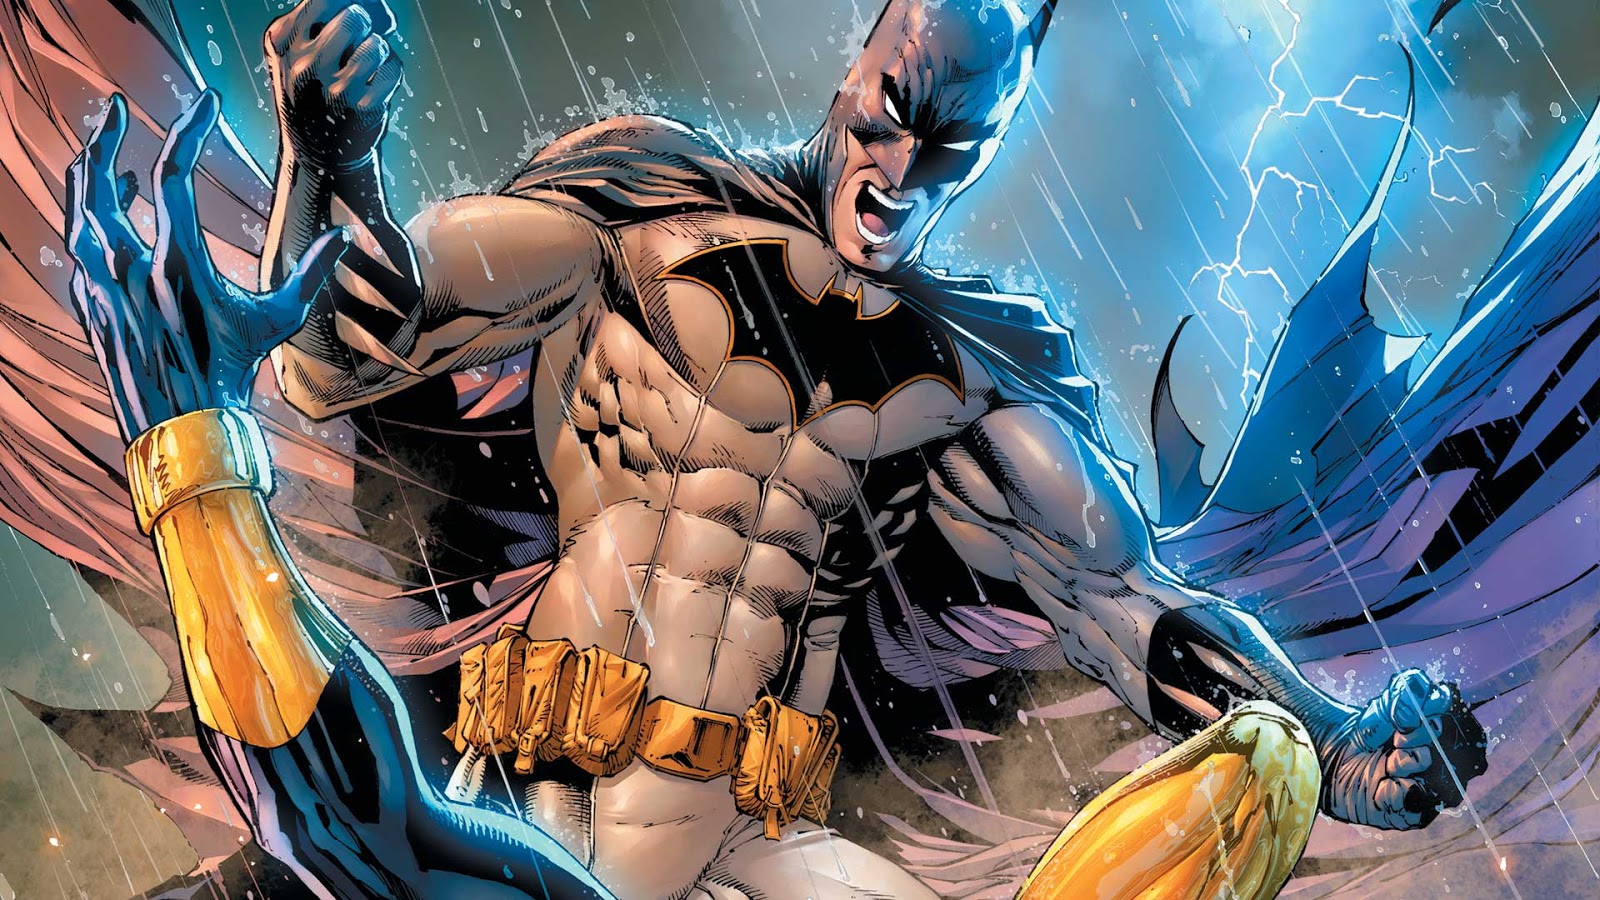 Weird Science DC Comics: Batman #47 (Second Opinion)